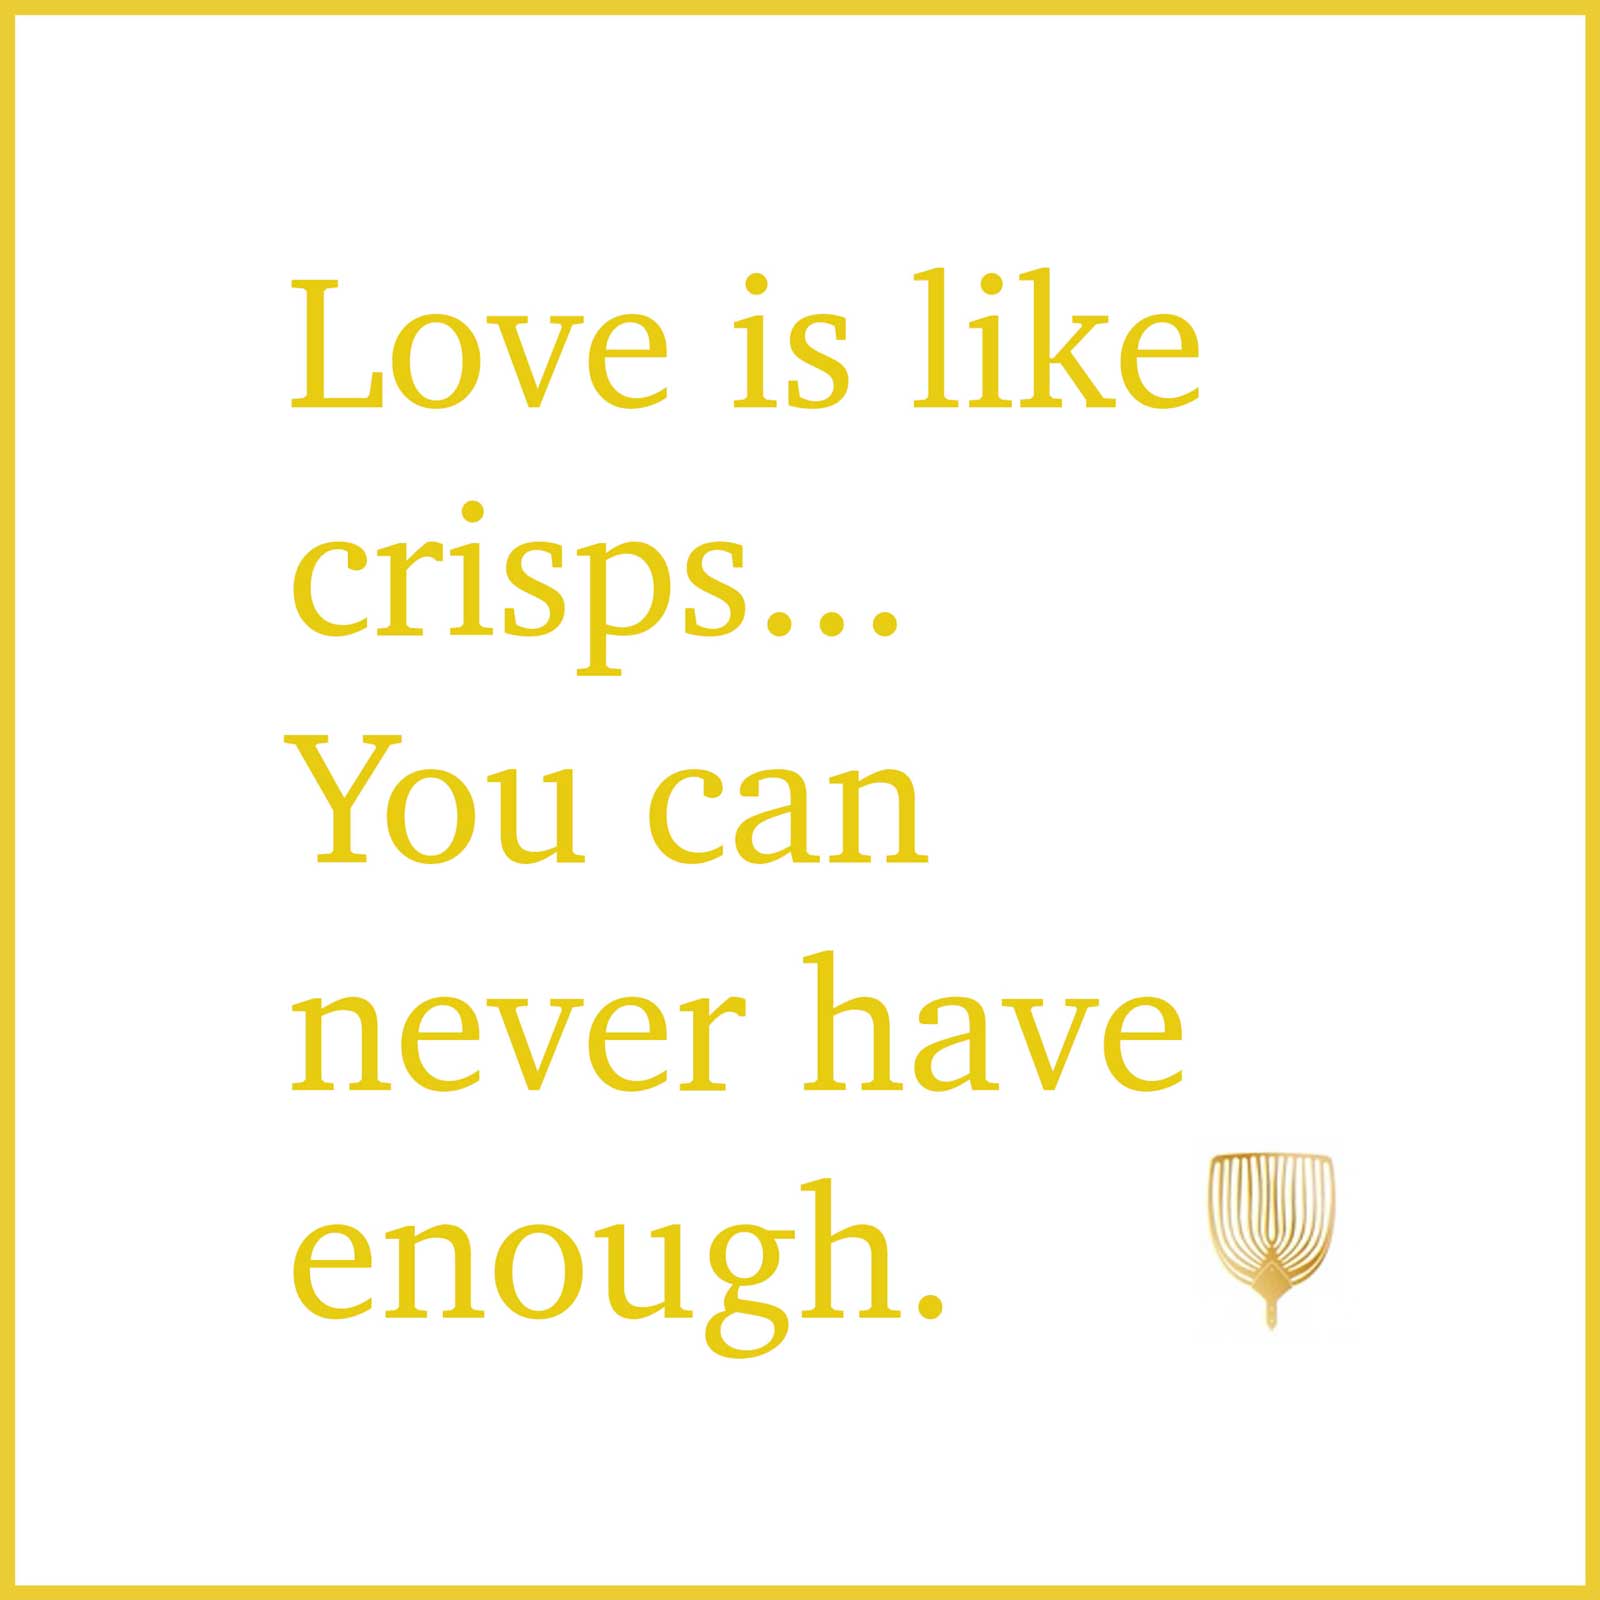 Love is like crisps